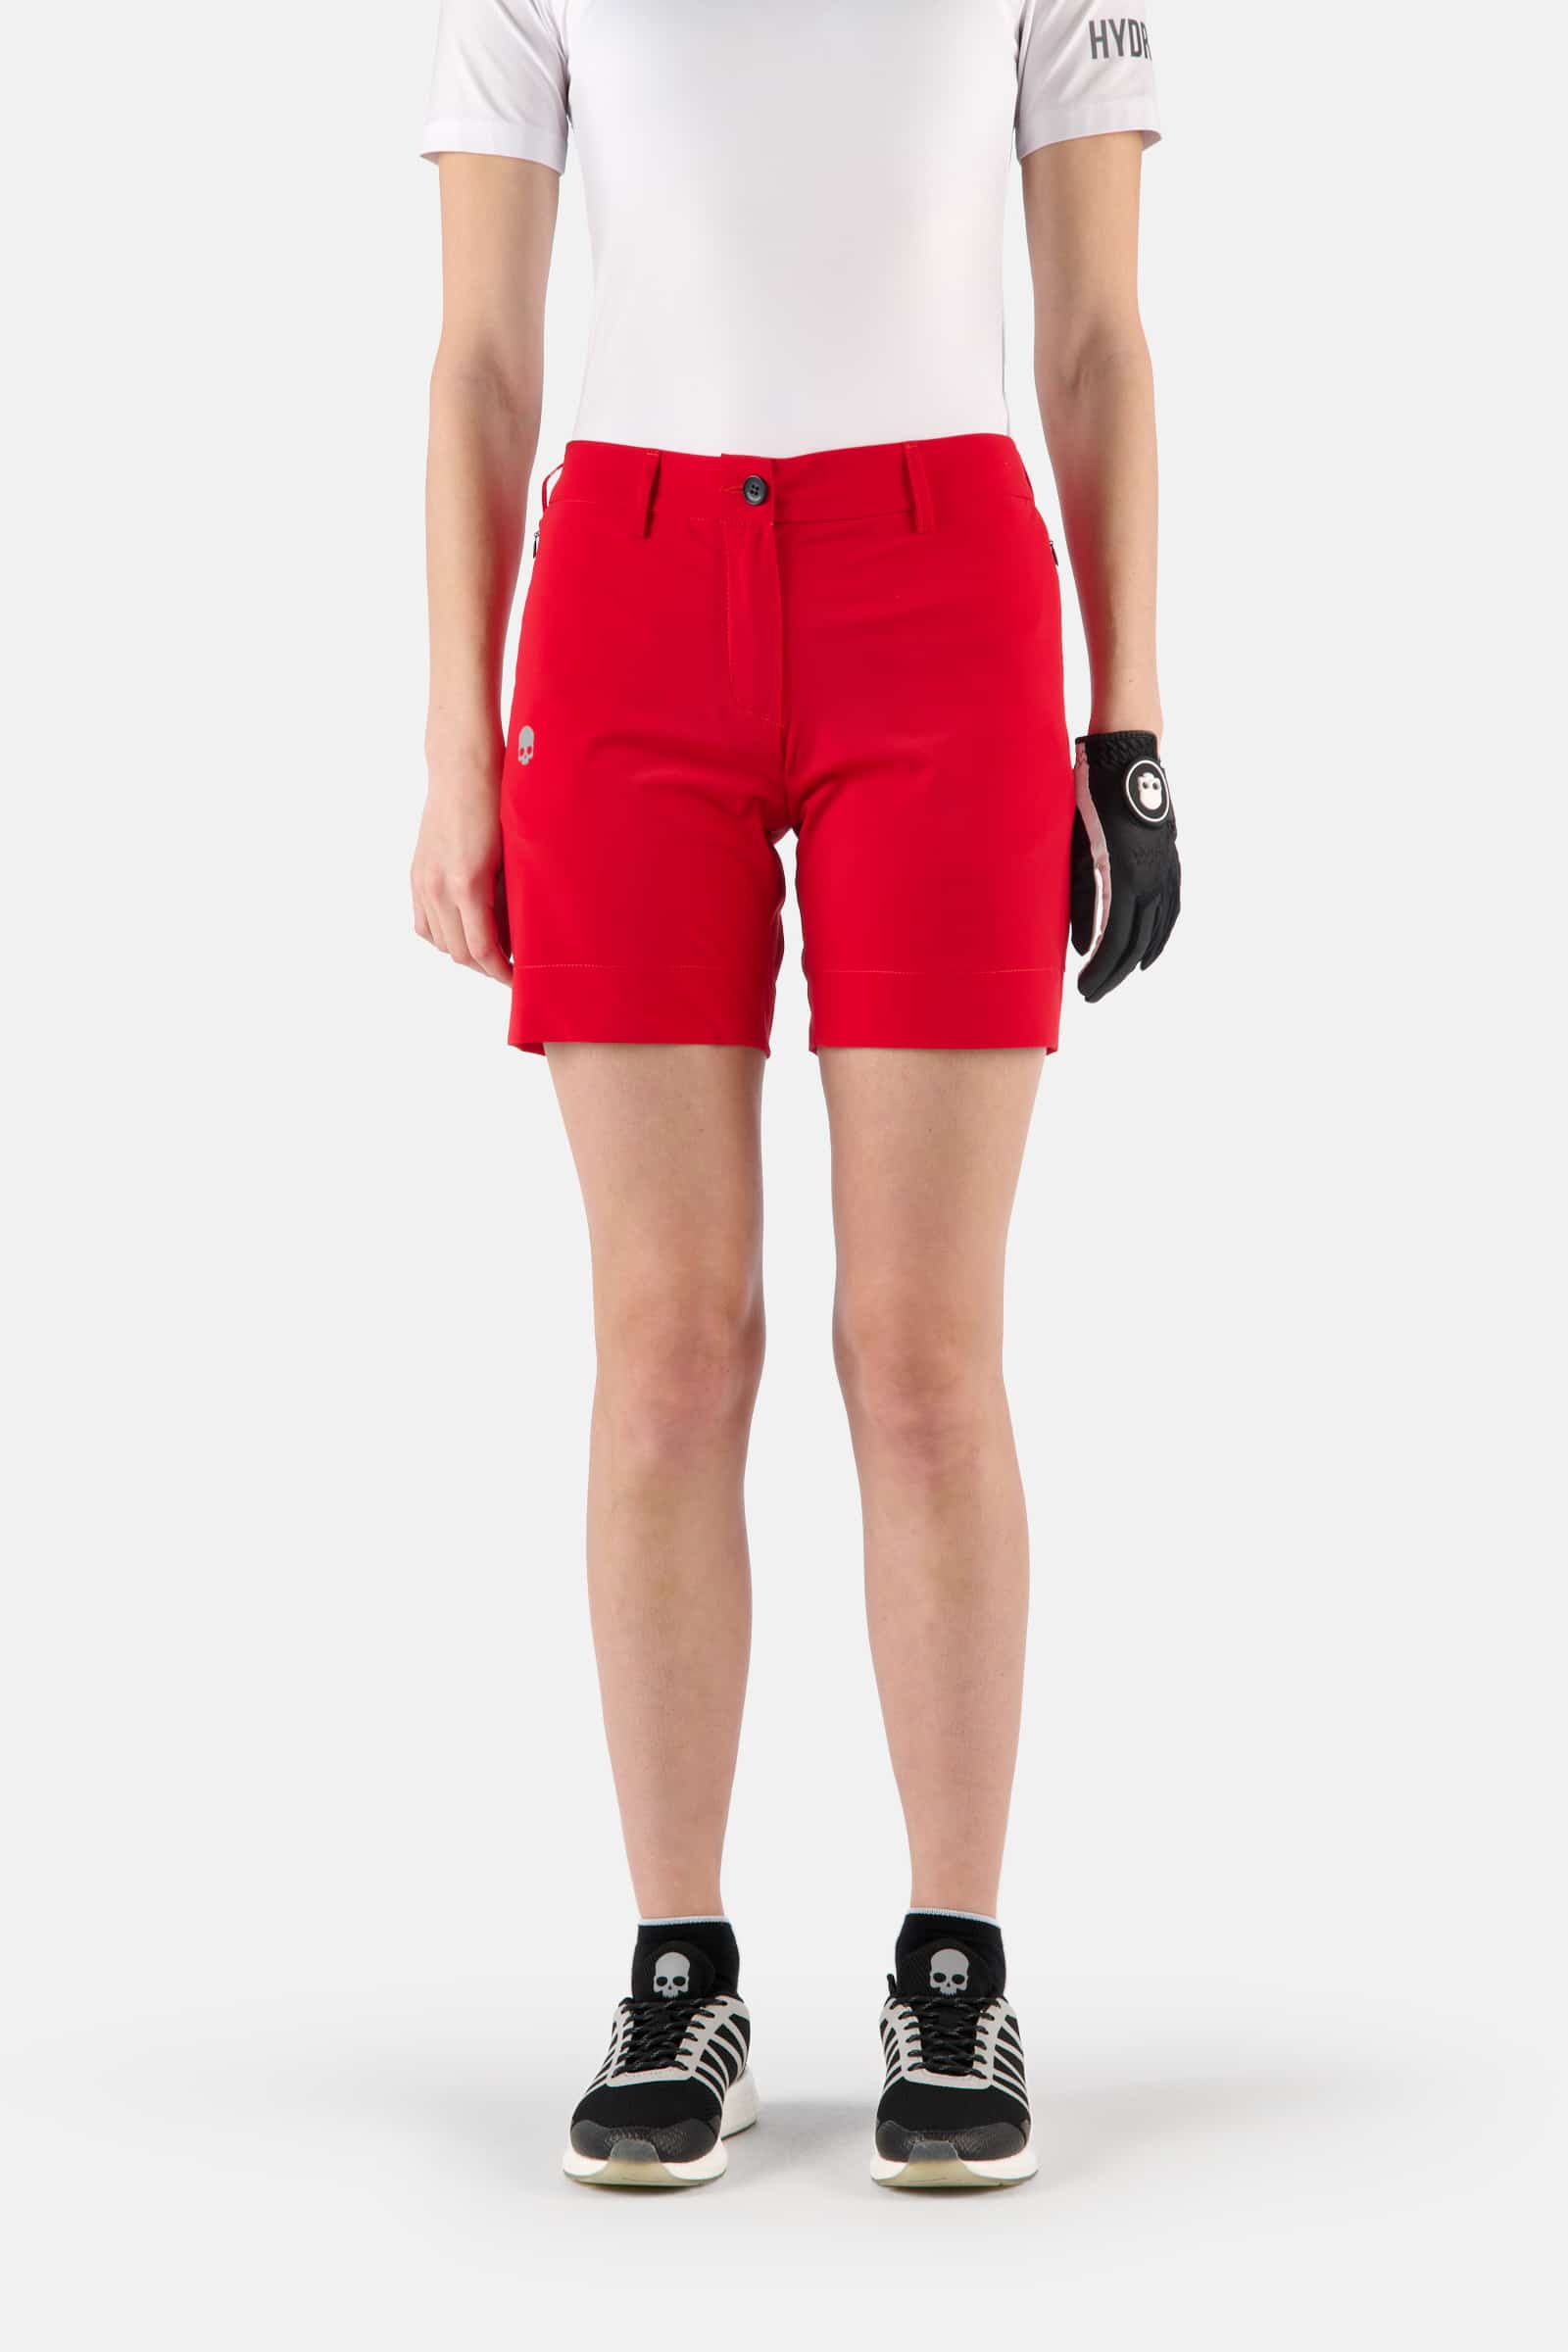 PANTALONCINI TECNICI - RED - Abbigliamento sportivo | Hydrogen